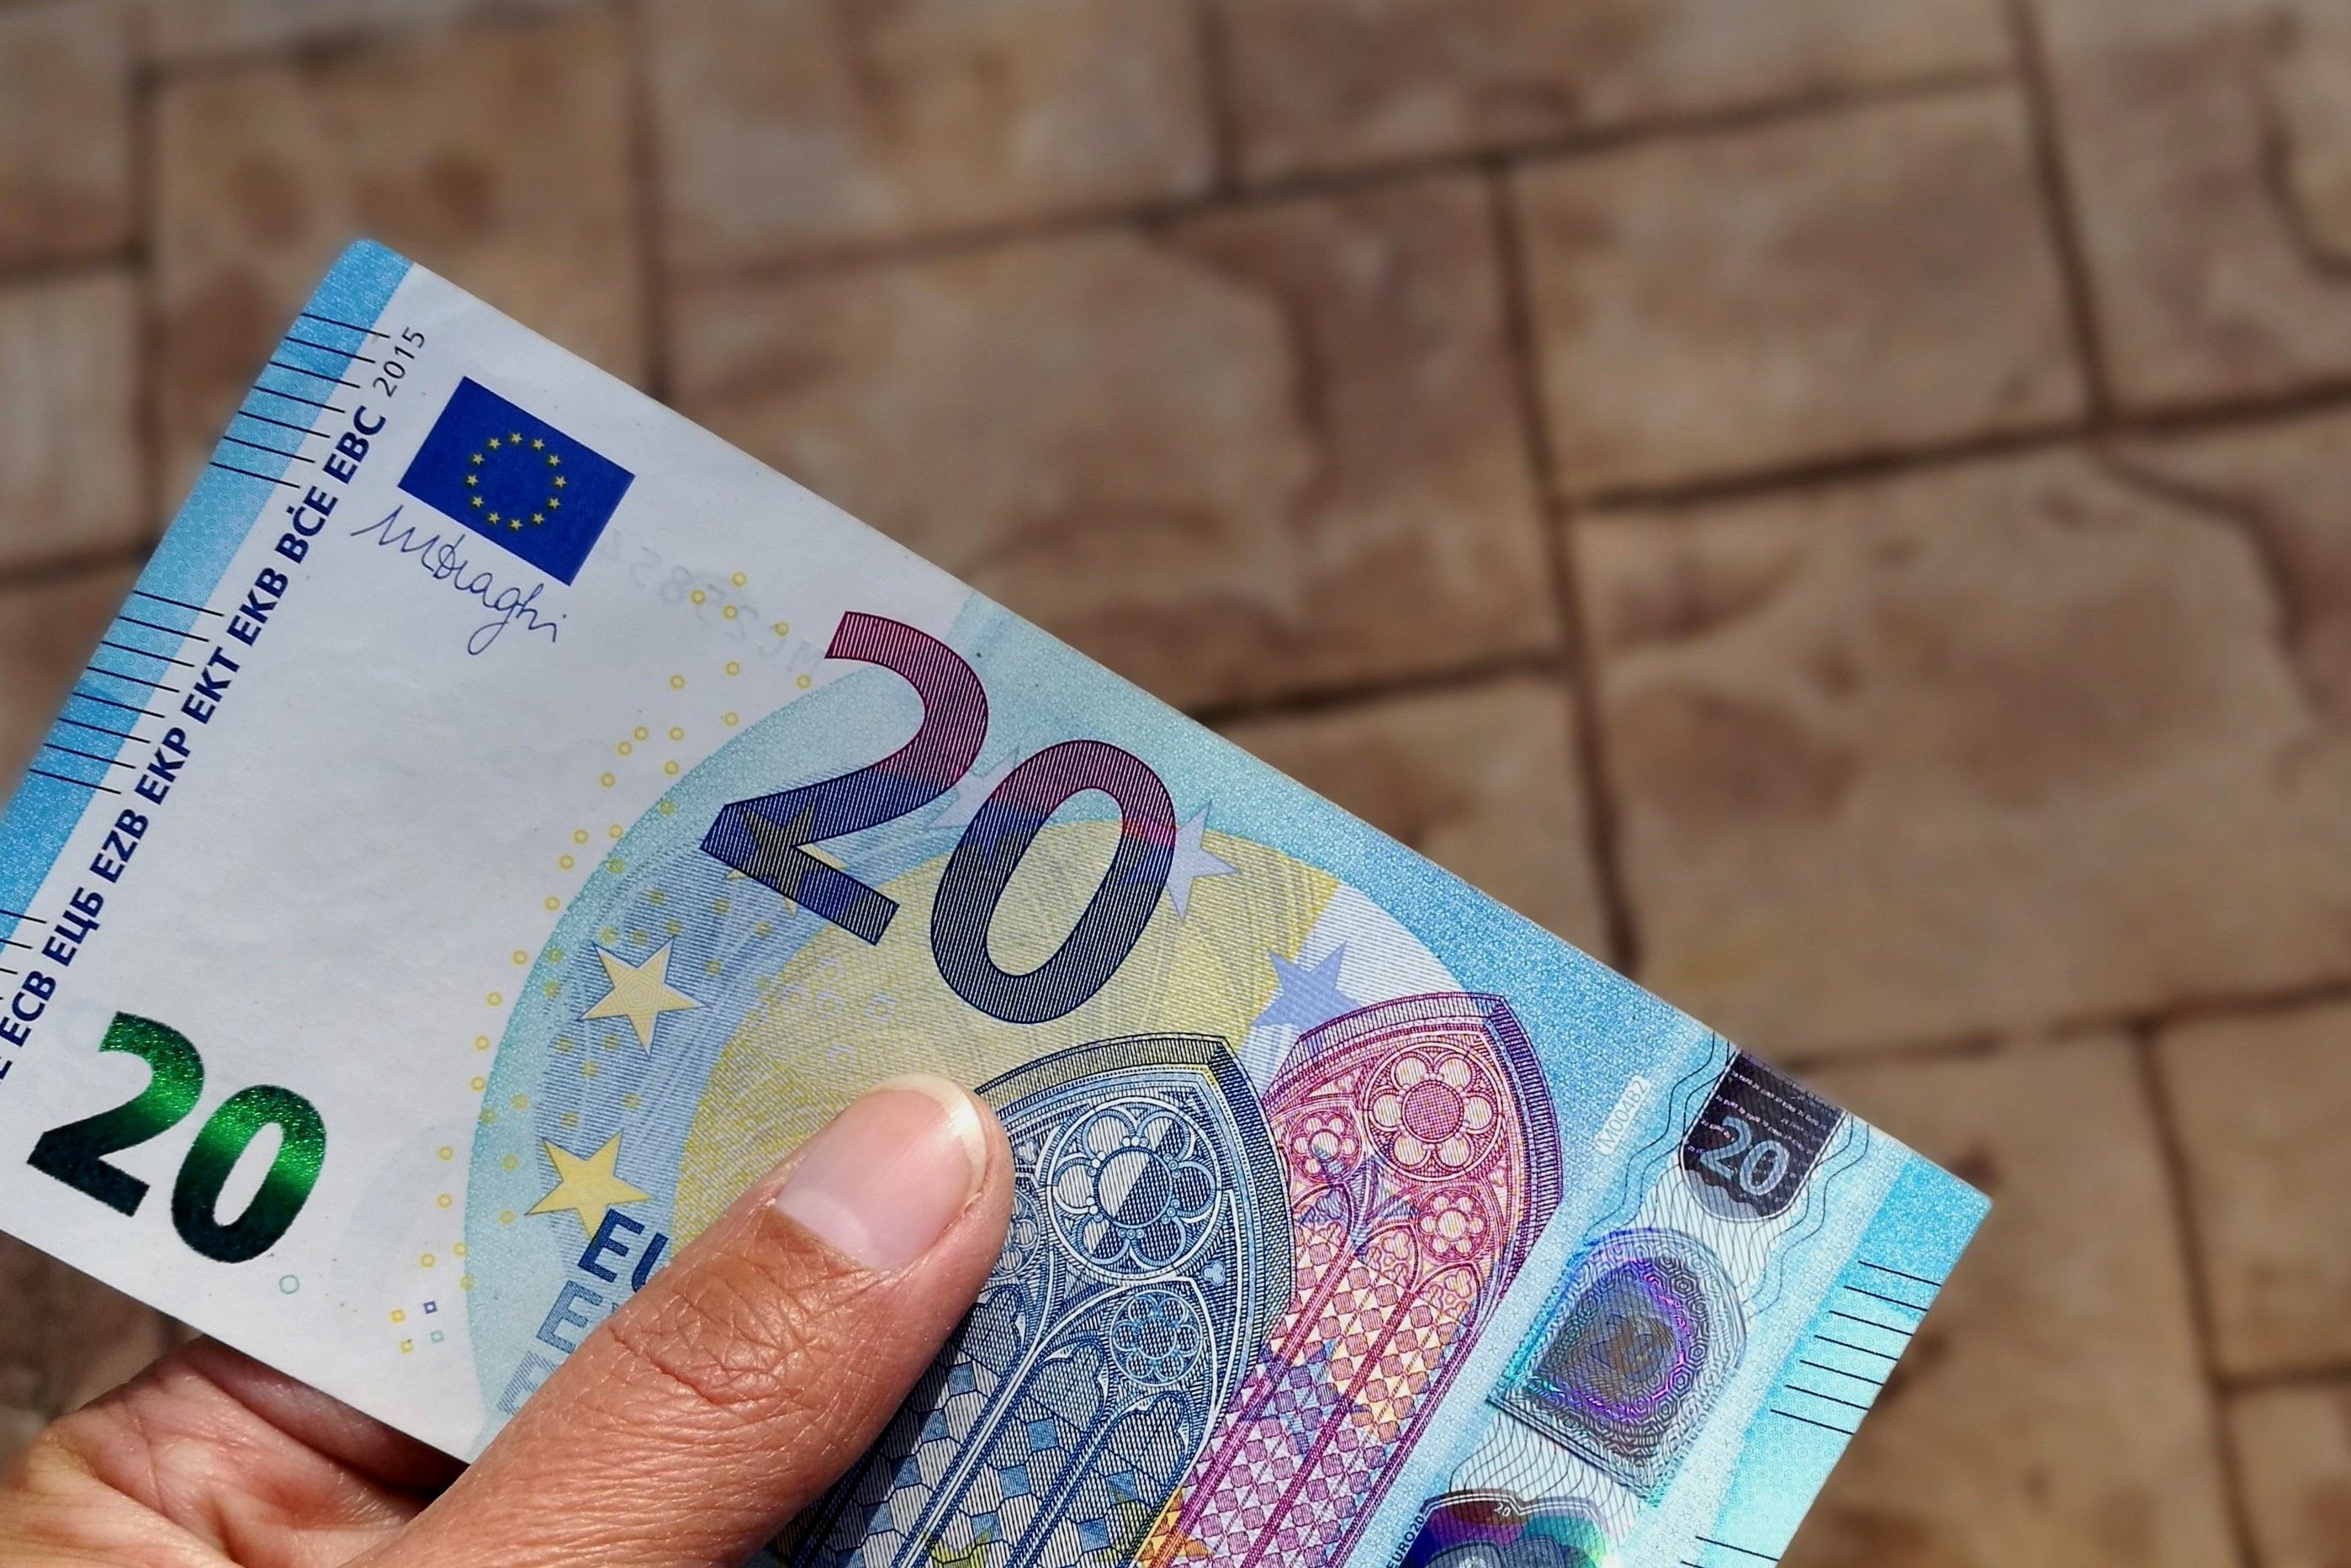 Un hombre se queda con 20 euros que encontró en el suelo sin imaginar las consecuencias que tendría. Foto: Bigstock   